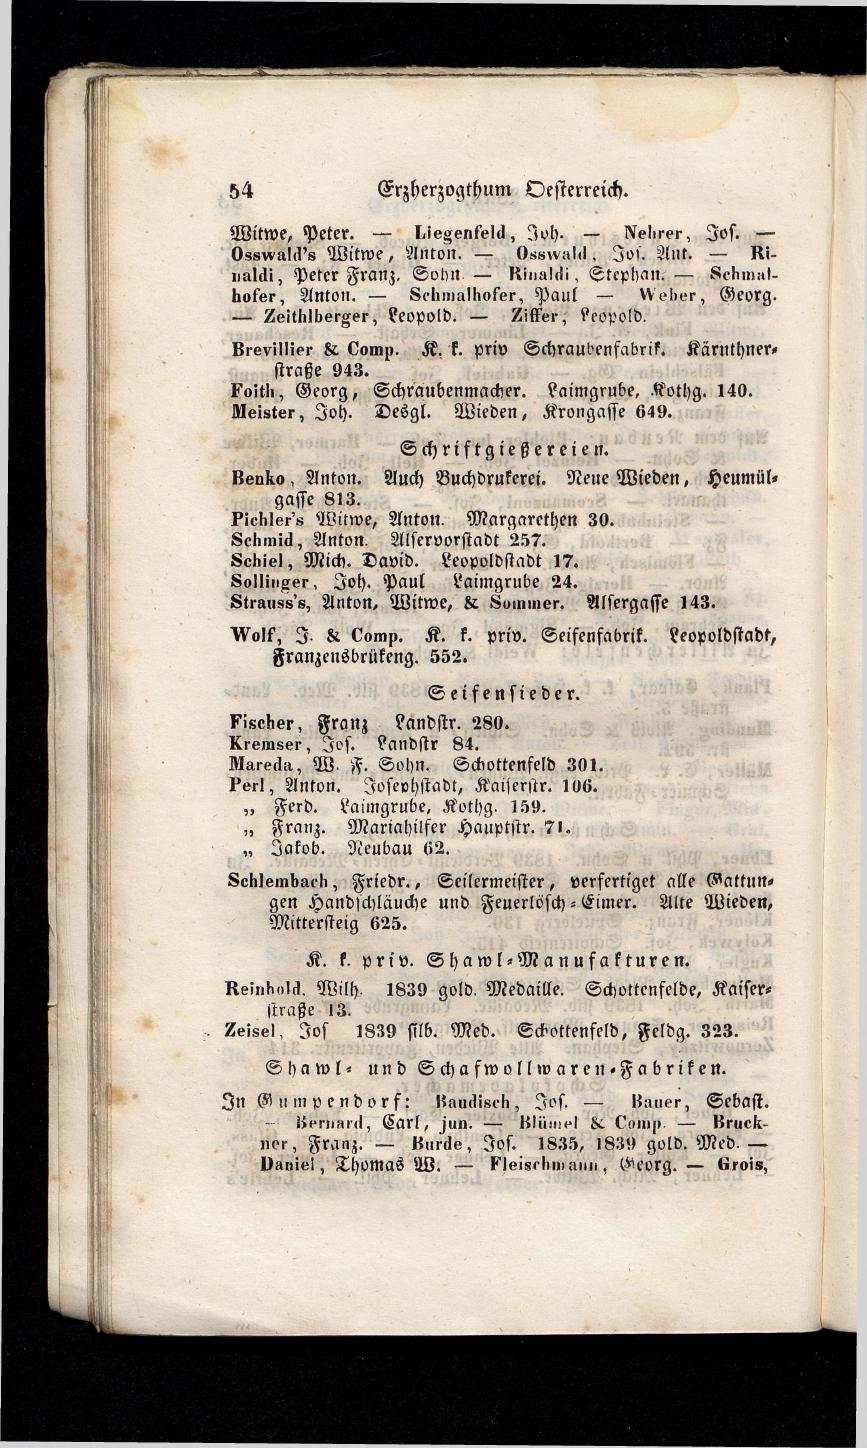 Grosses Adressbuch der Kaufleute. No. 13. Oesterreich ober u. unter der Enns 1844 - Seite 58